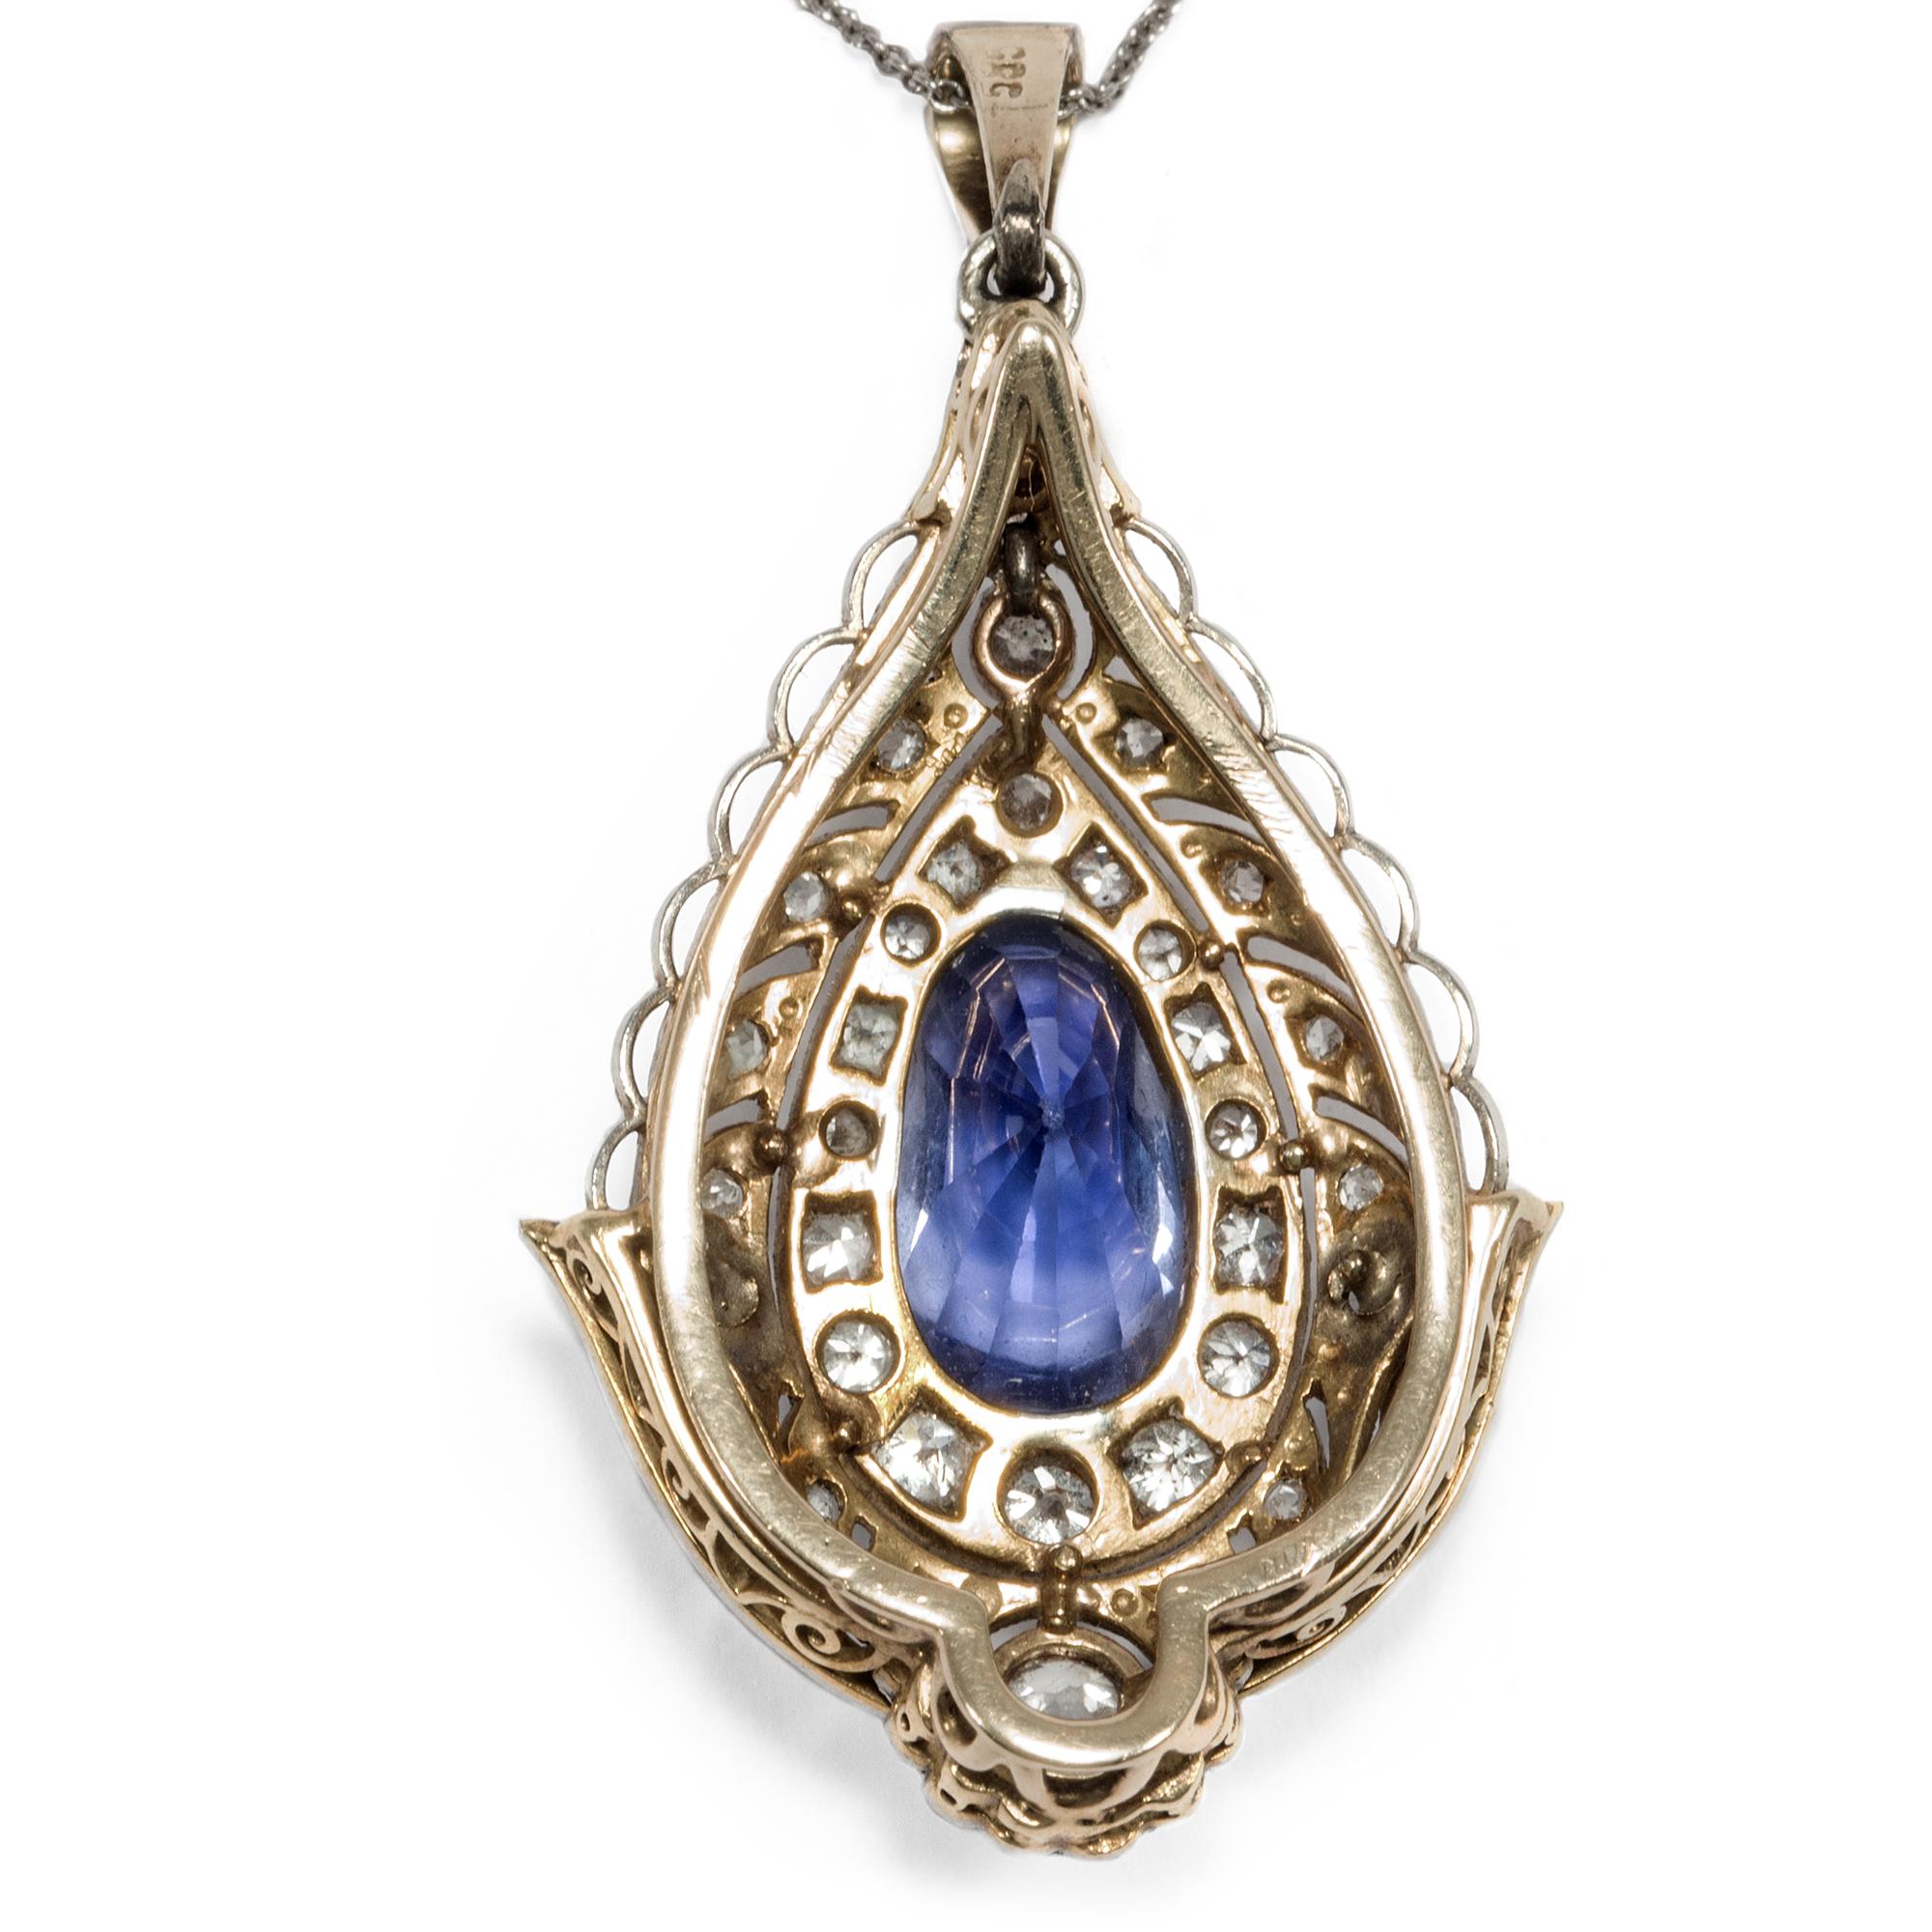 Women's or Men's Belle Époque/Edwardian circa 1910, 4.4 Ct No Heat Blue Sapphire Diamond Pendant